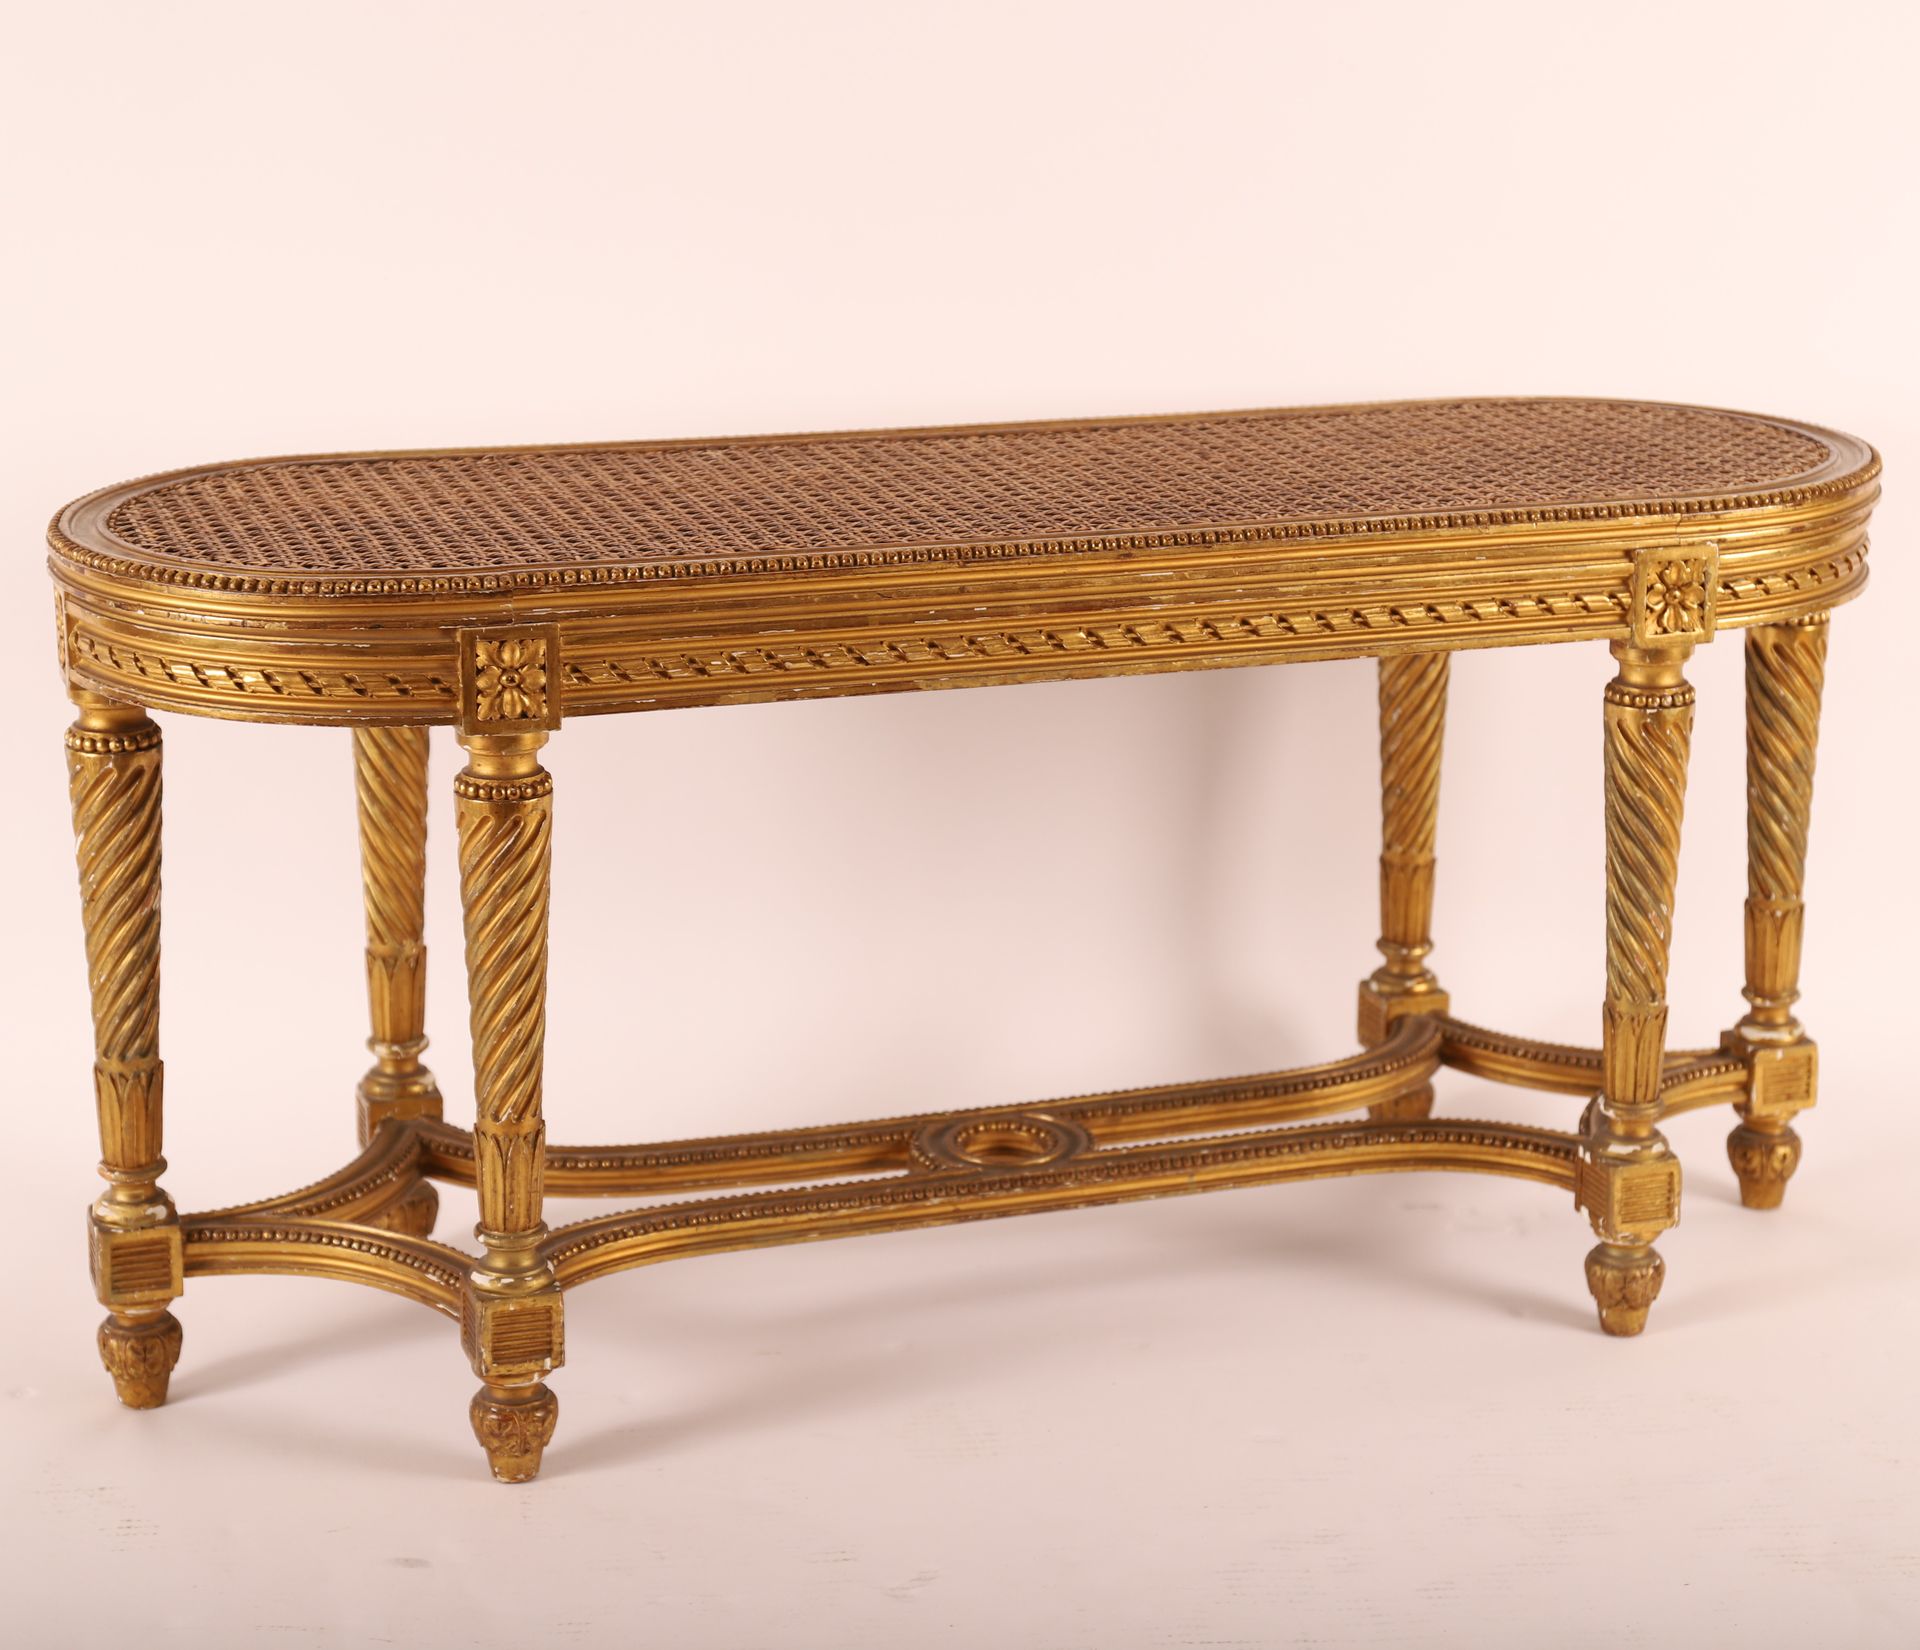 Null 镀金木凳 路易十六，19世纪

杖刑的座位

扭曲的腿连在一起

46 x 97 x 32 厘米

使用和维护的条件